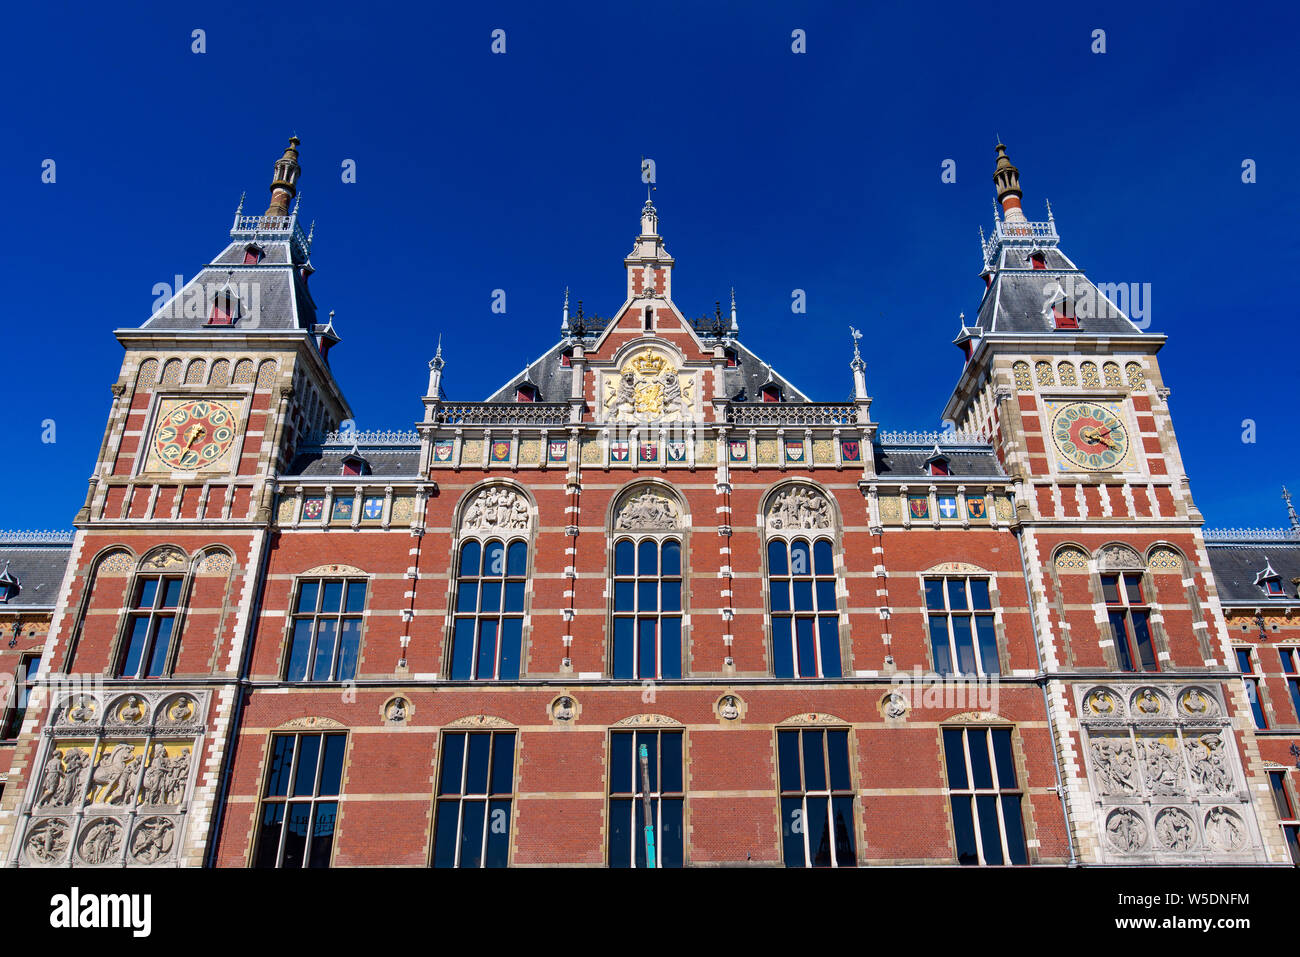 La stazione centrale di Amsterdam, la più grande stazione ferroviaria di Amsterdam, Paesi Bassi Foto Stock